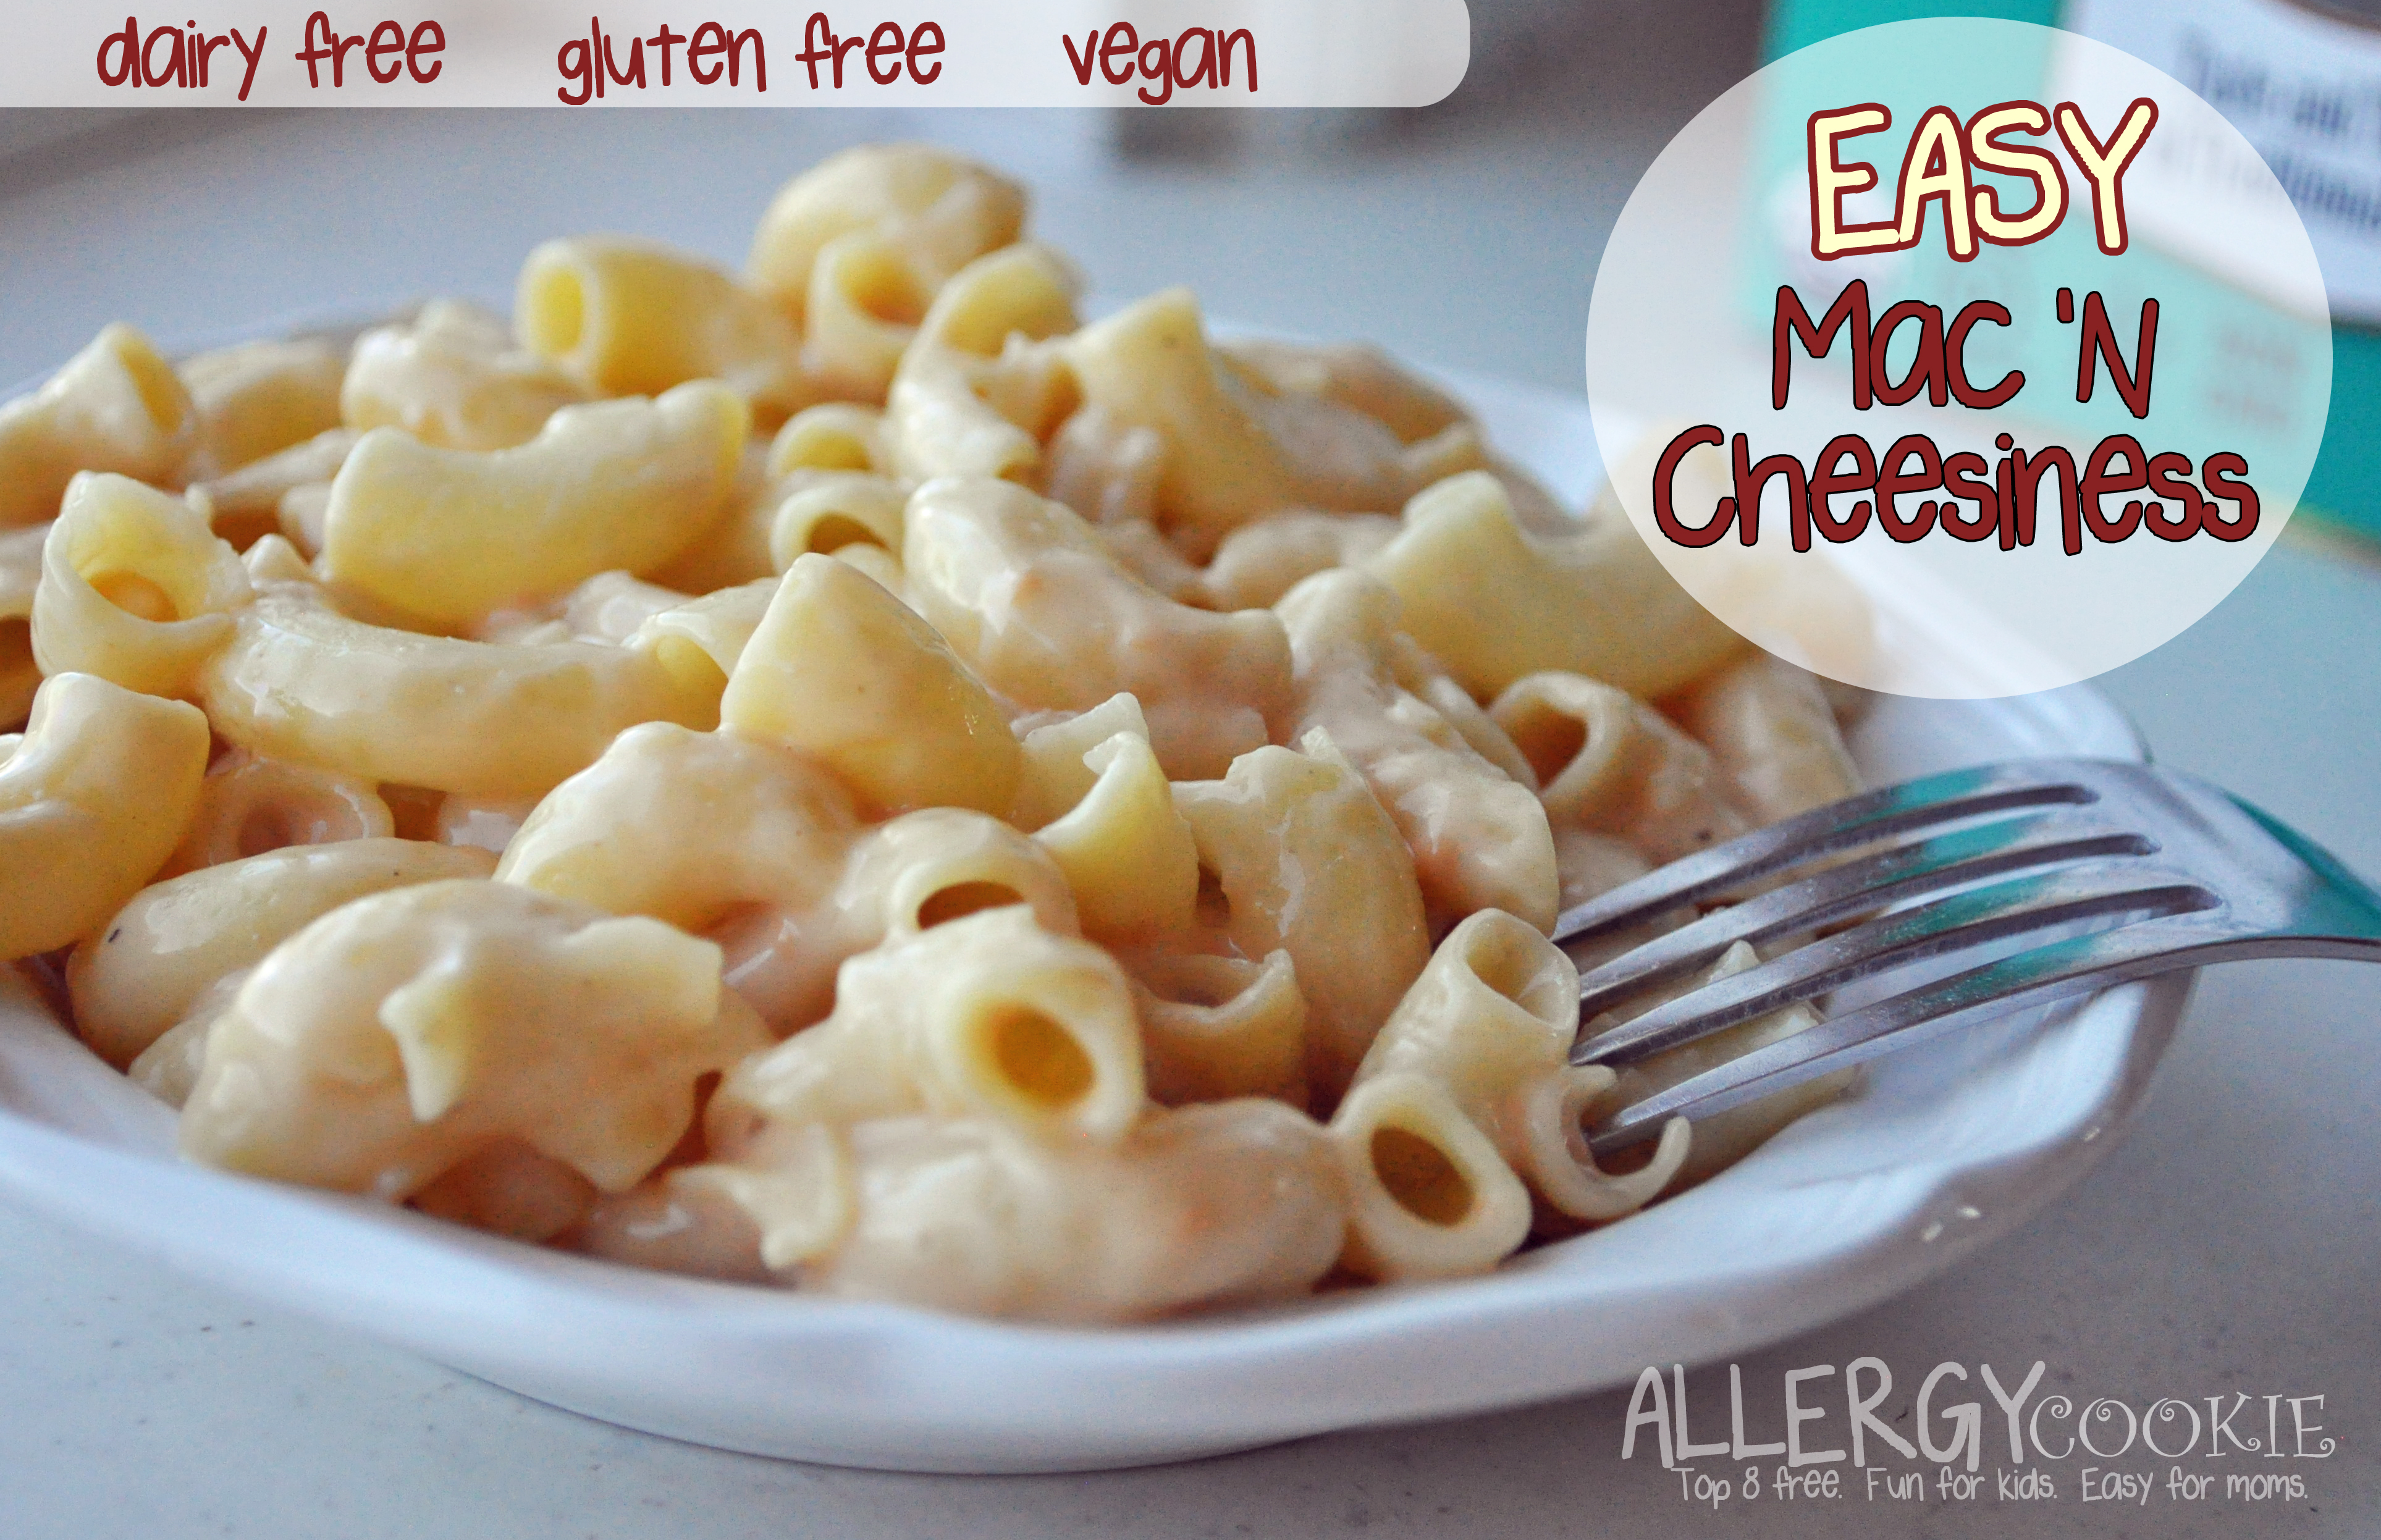 Creamy, Easy Mac & Cheesiness (dairy free, gluten free, vegan)